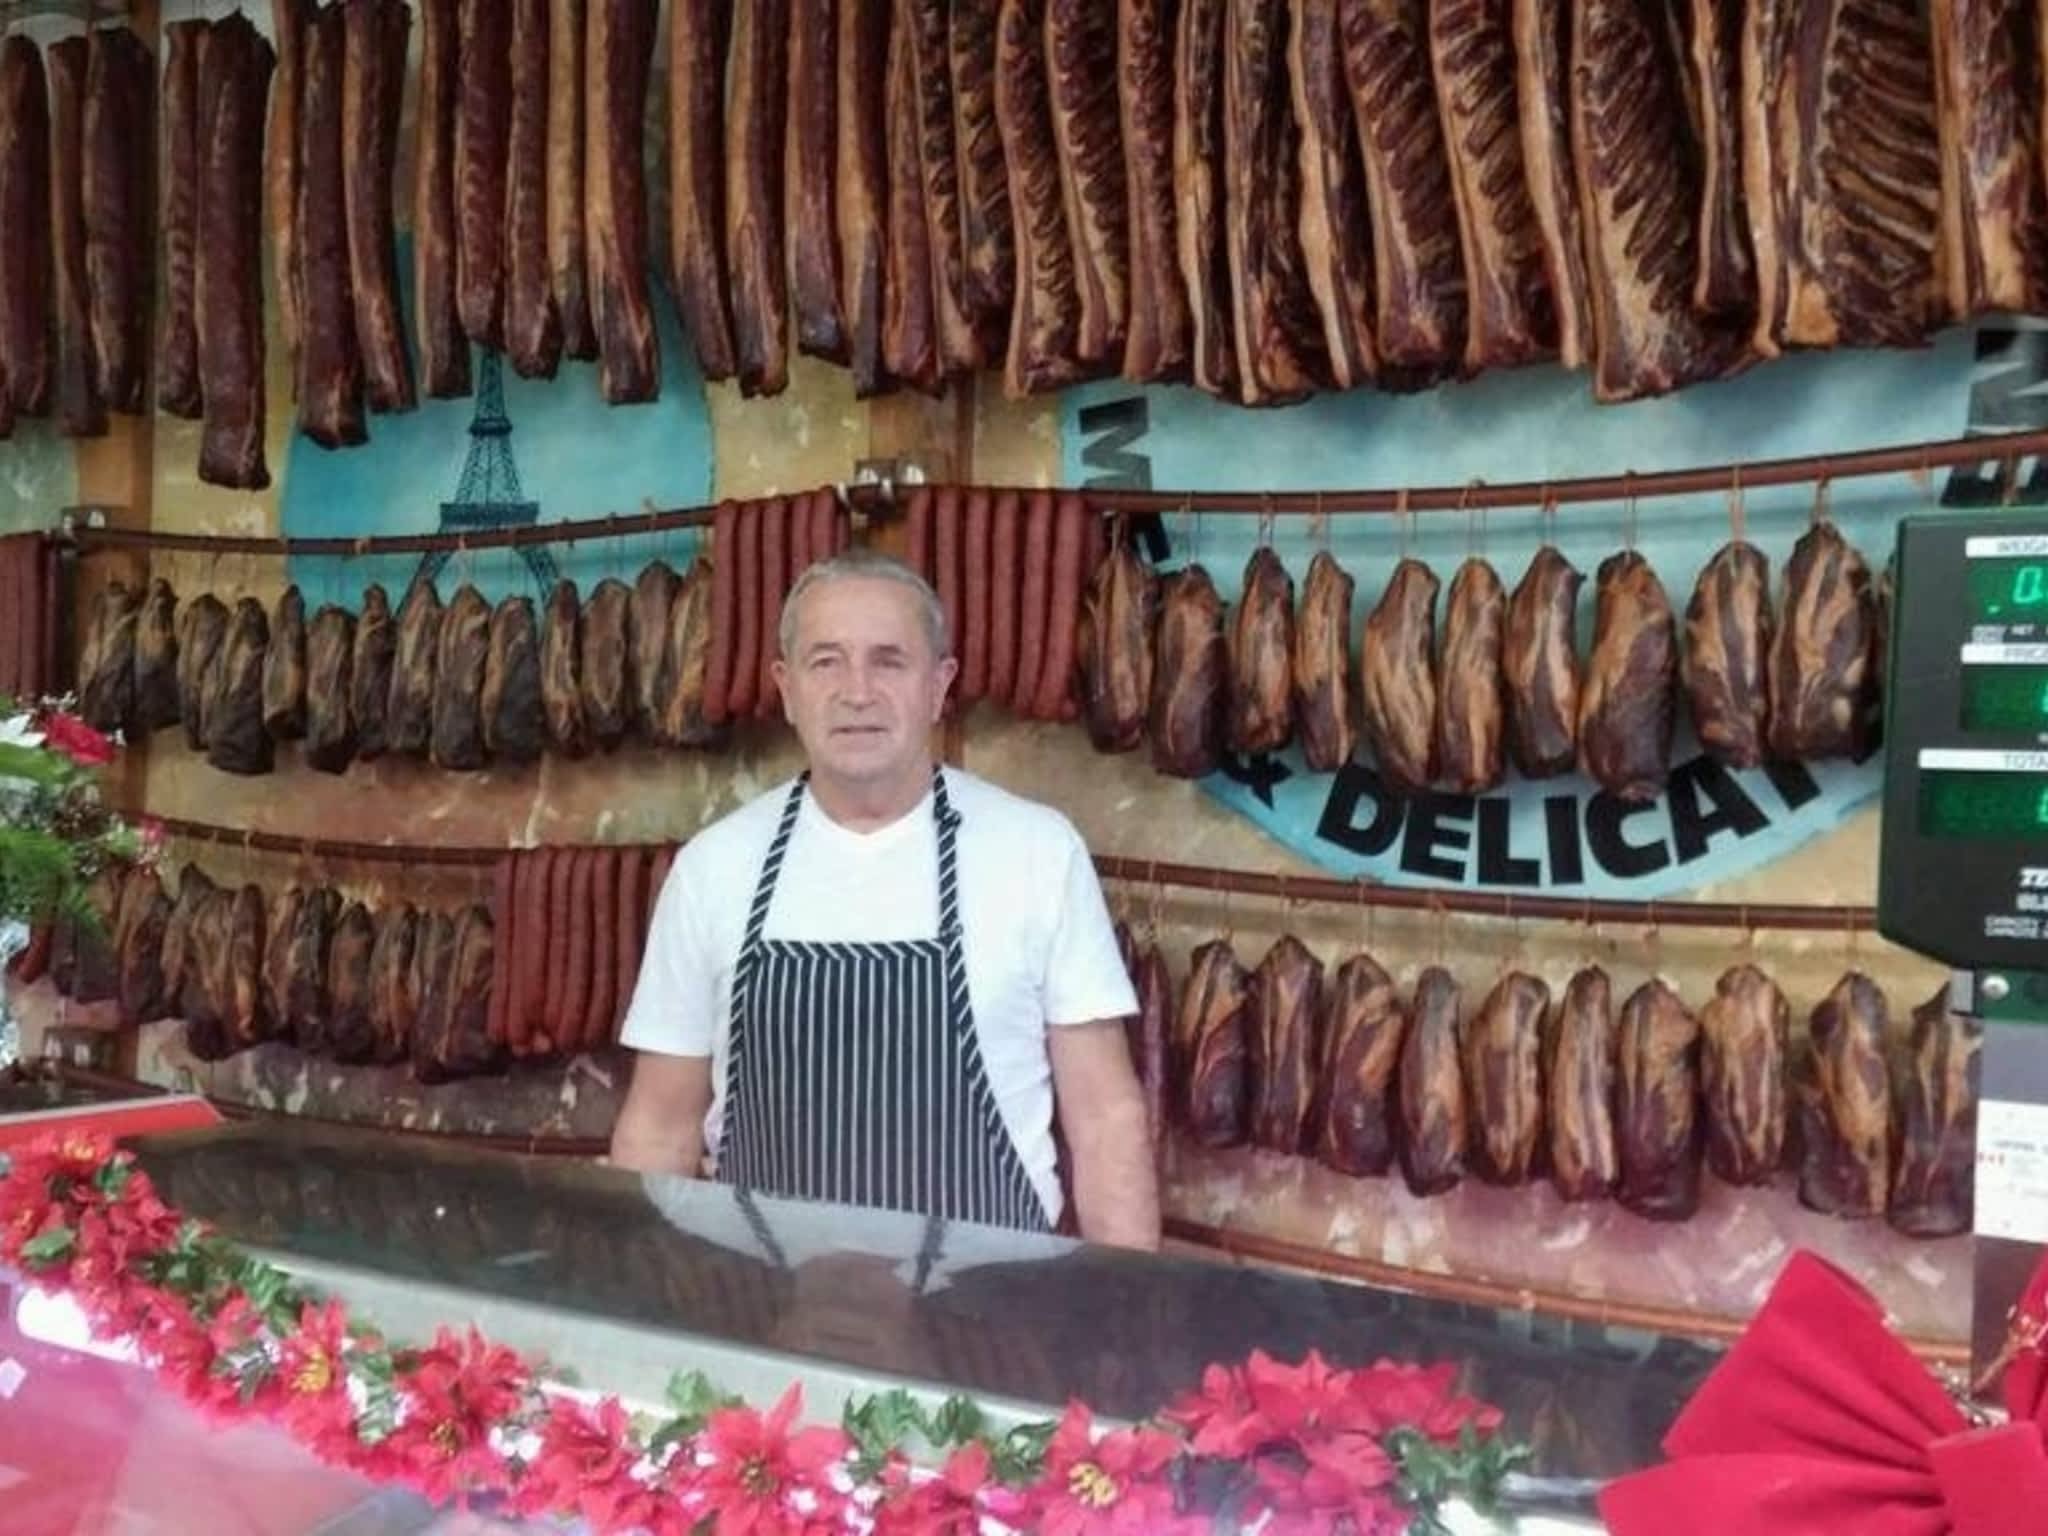 photo Taste Of Europe Meat